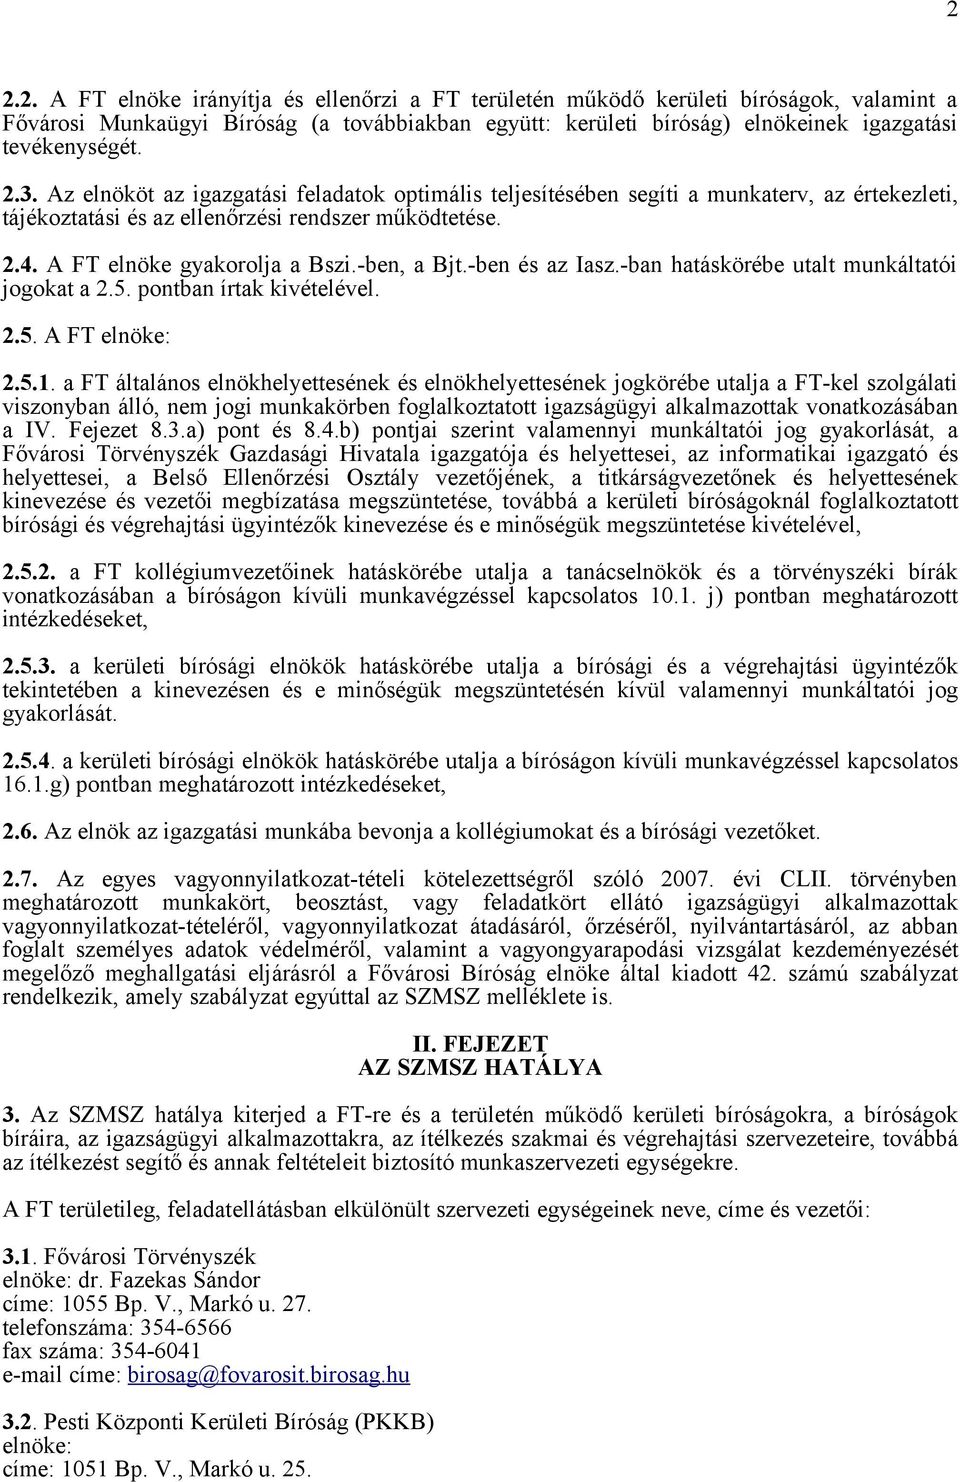 A FŐVÁROSI TÖRVÉNYSZÉK ELNÖKE El. II. B. 52/75. szám - PDF Ingyenes letöltés